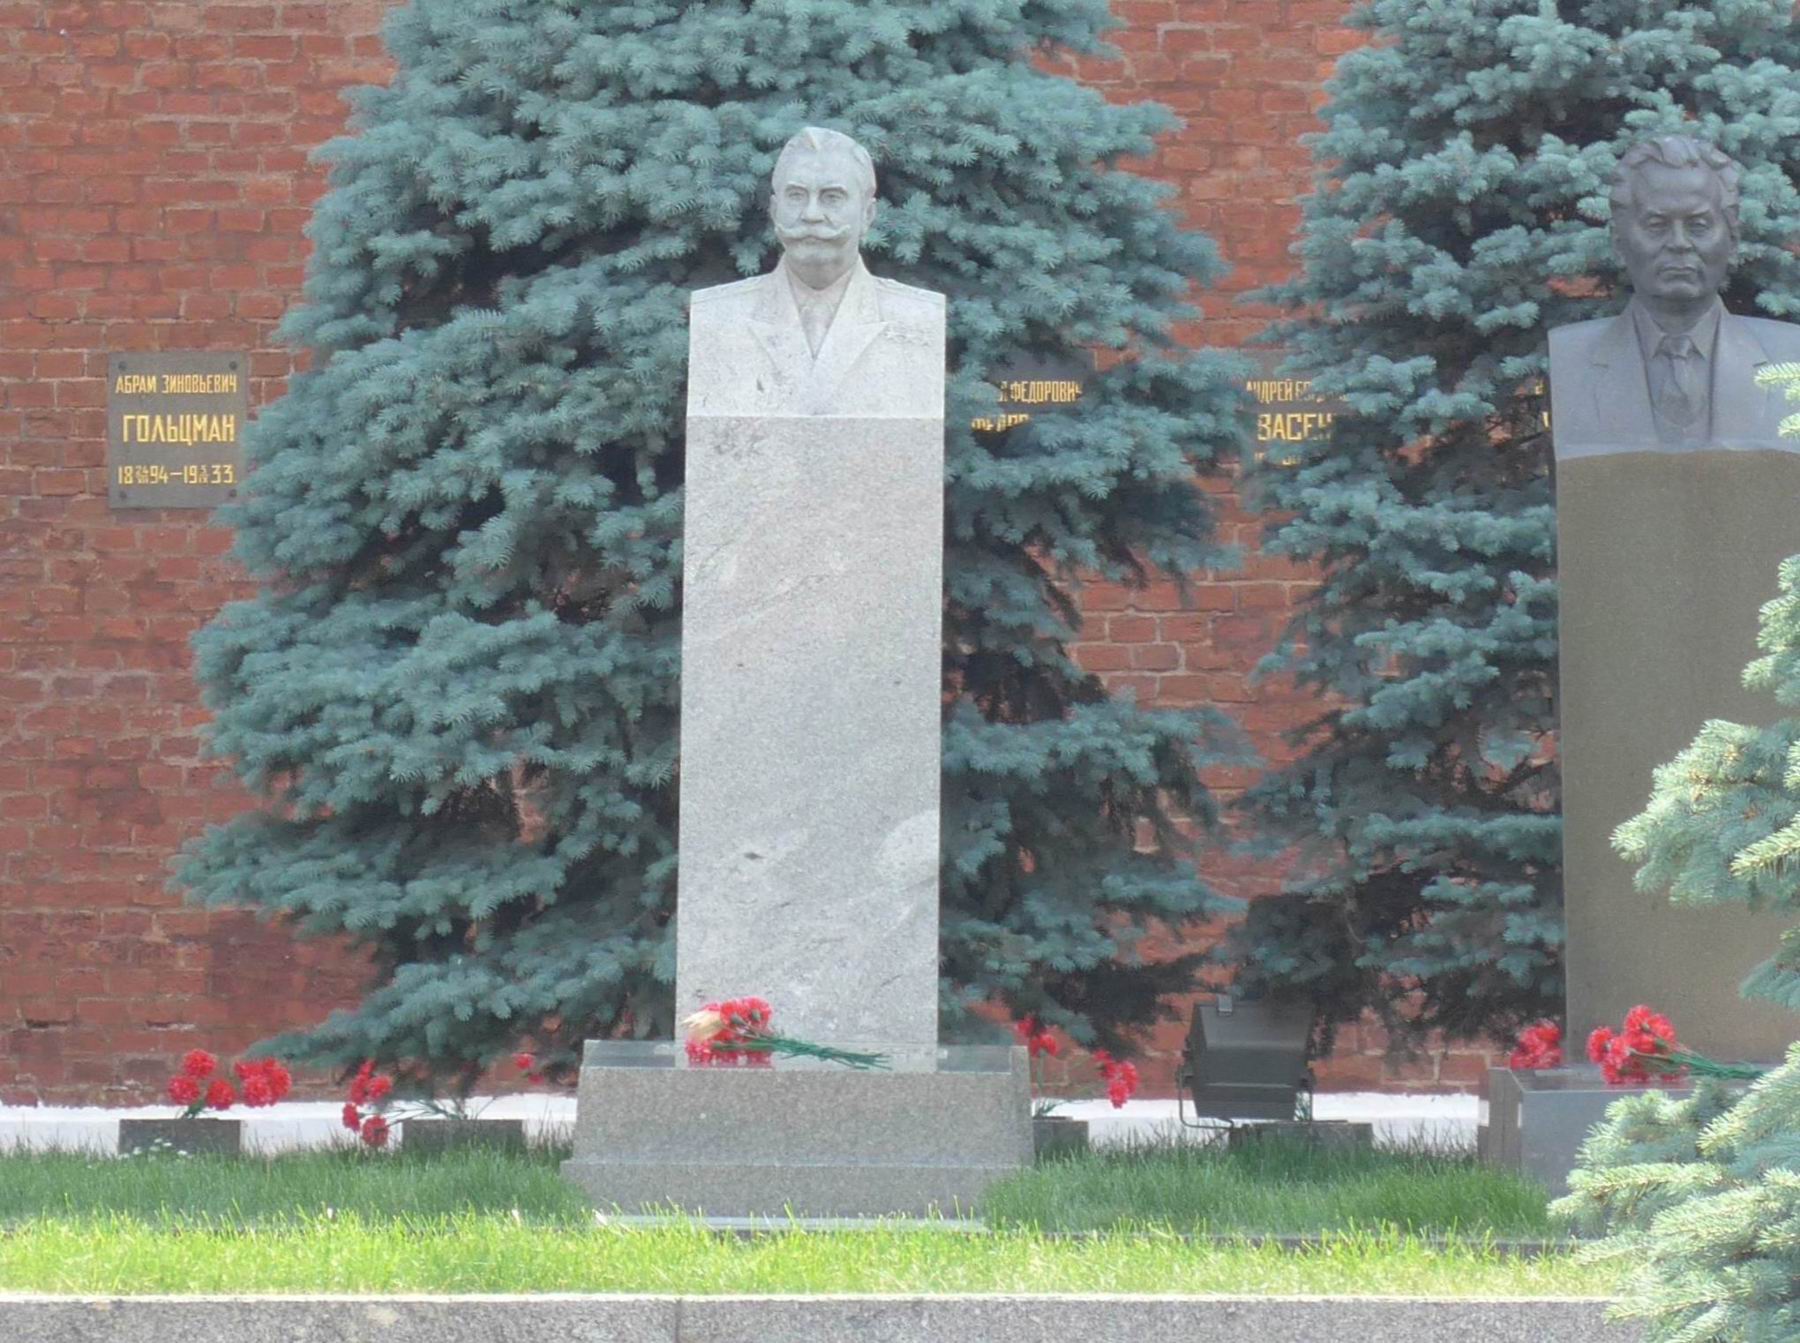 Памятник на могиле Будённого С.М. (1883–1973), ск. Н.В.Томский, в Некрополе у Кремлёвской стены. Нажмите левую кнопку мыши, чтобы увидеть другой ракурс.